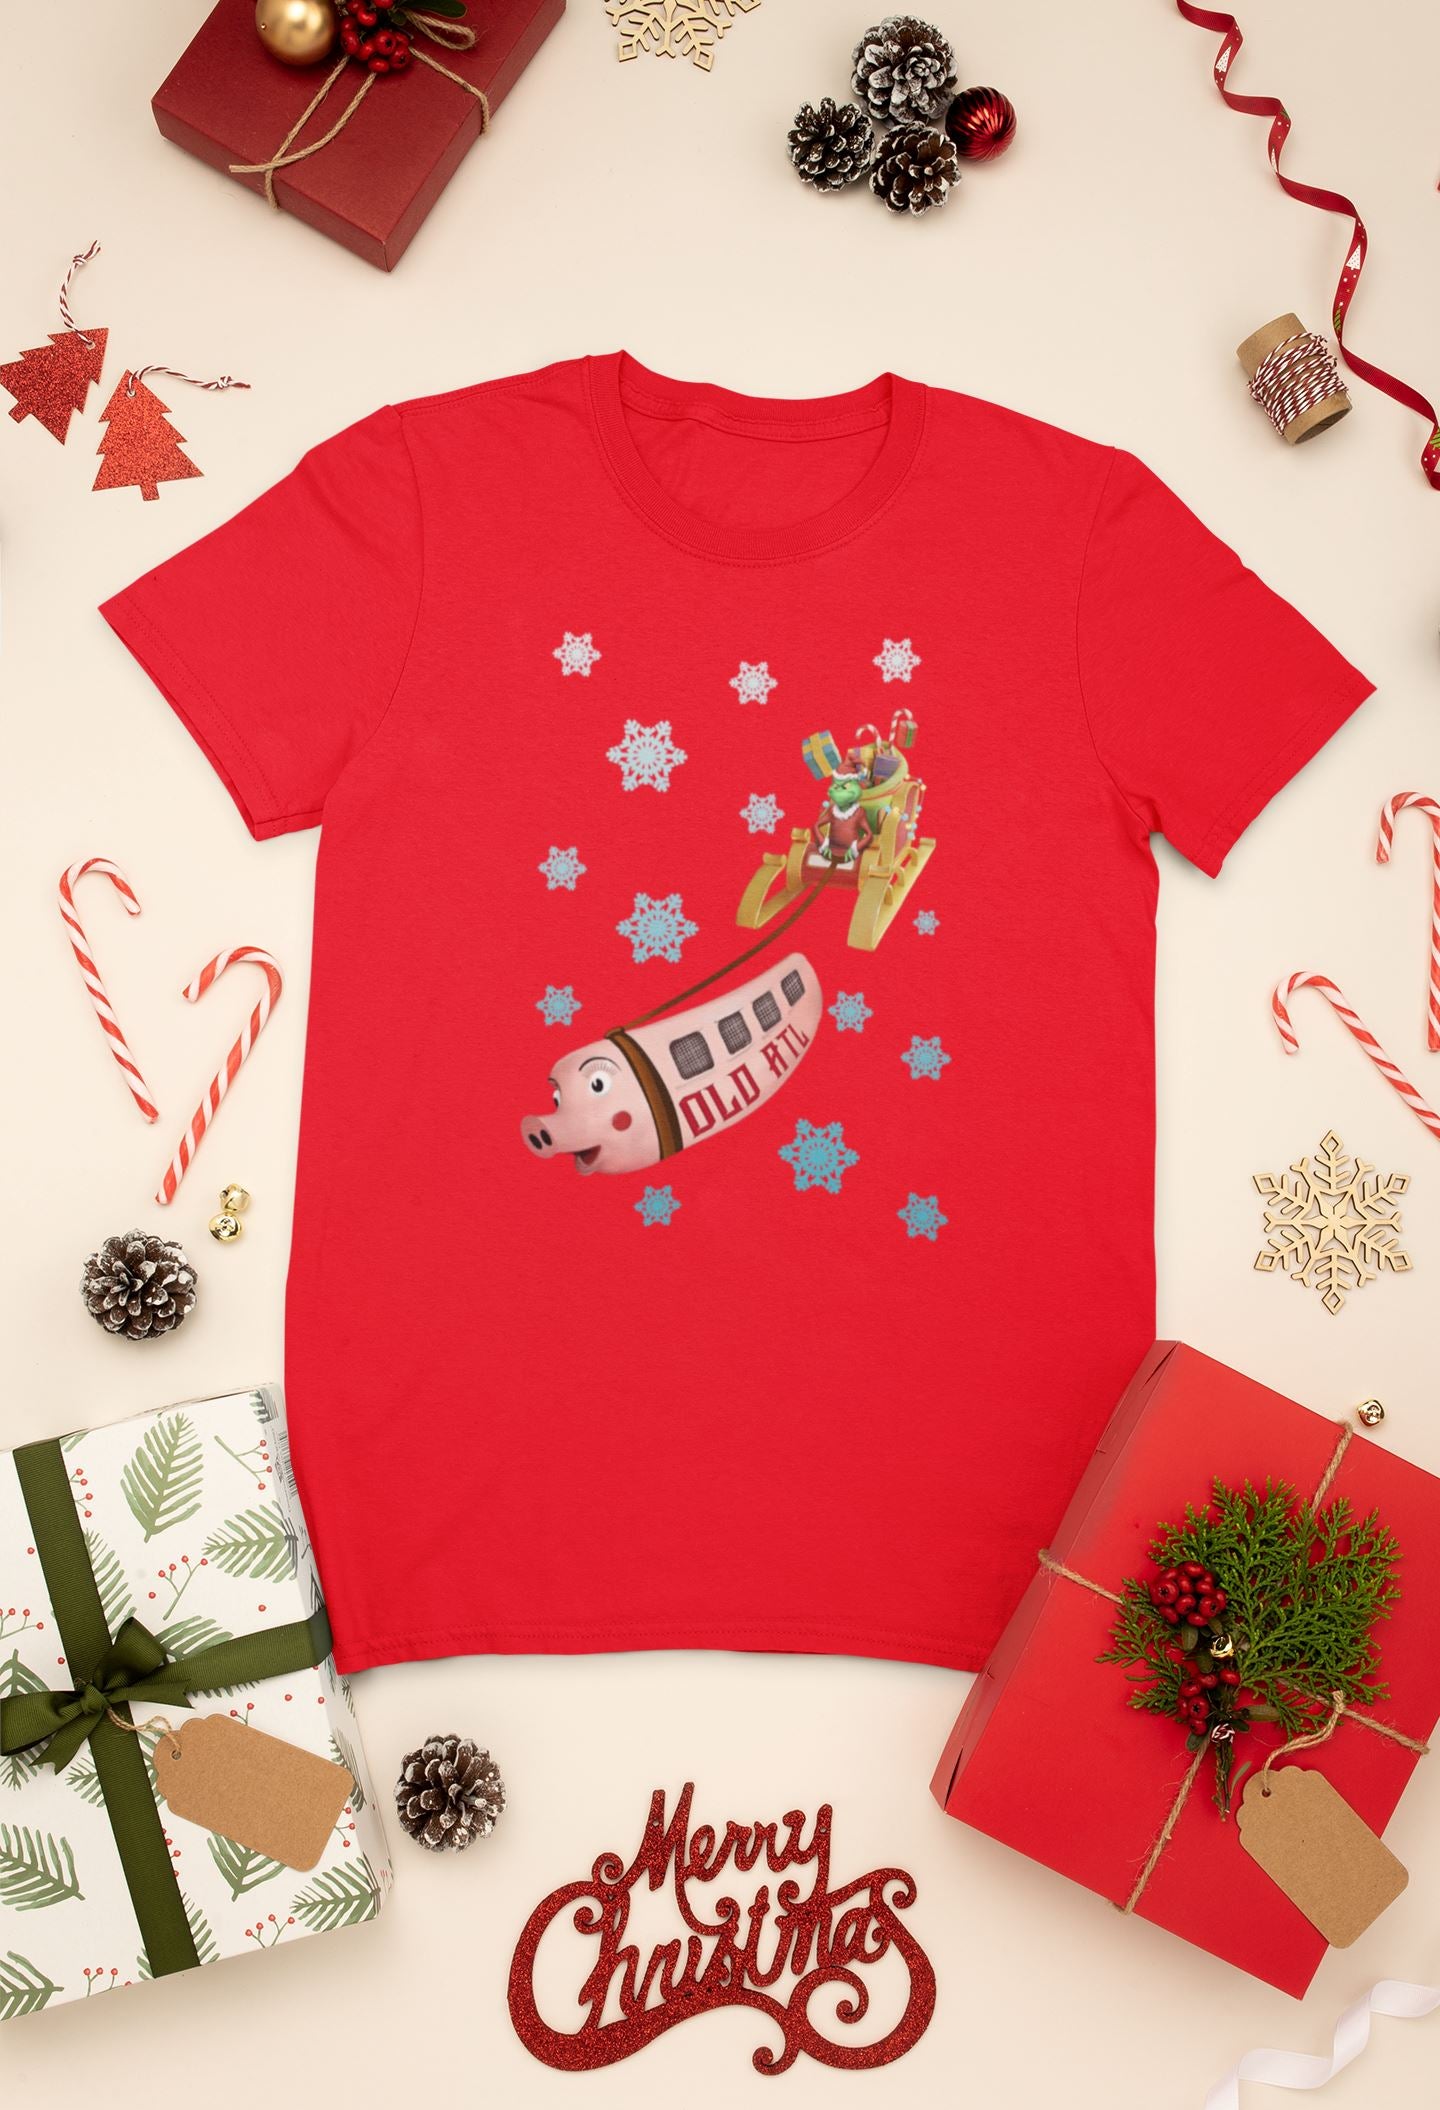 Old ATL "Pink Pig" Christmas Shirt, Atlanta Holiday Shirt T-Shirt B1ack By Design LLC 